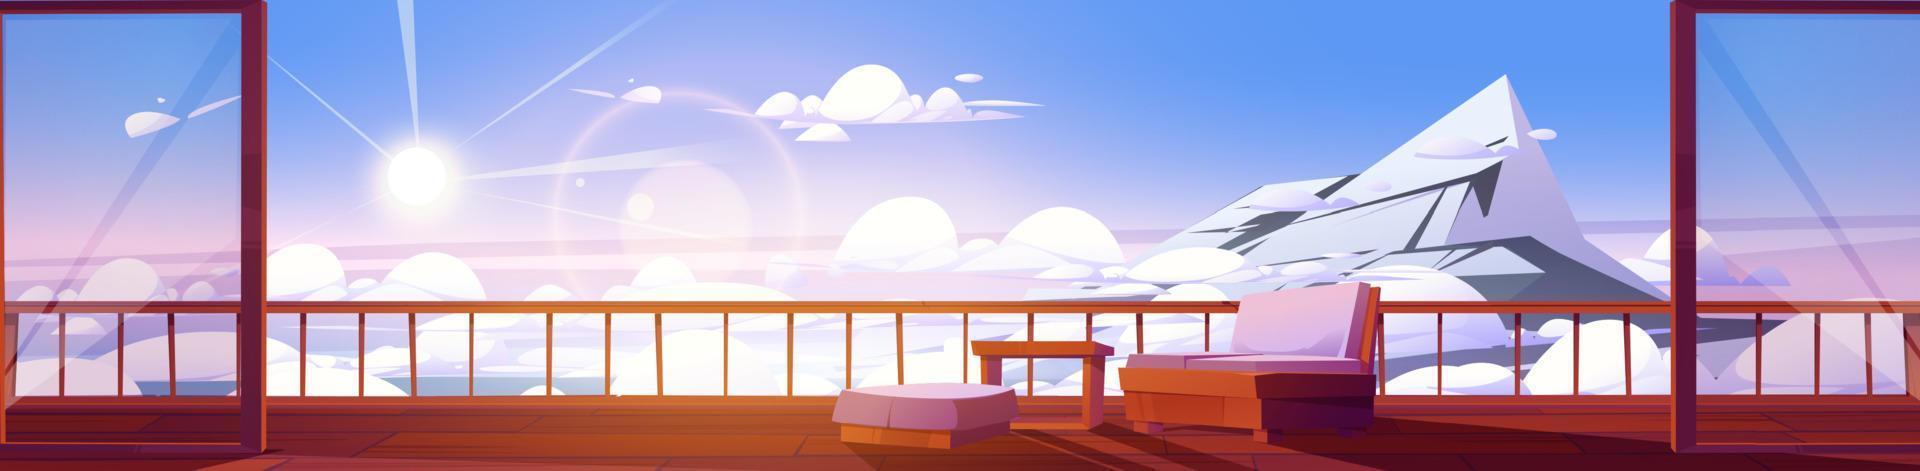 cena de alta montanha com nuvens e terraço da casa vetor